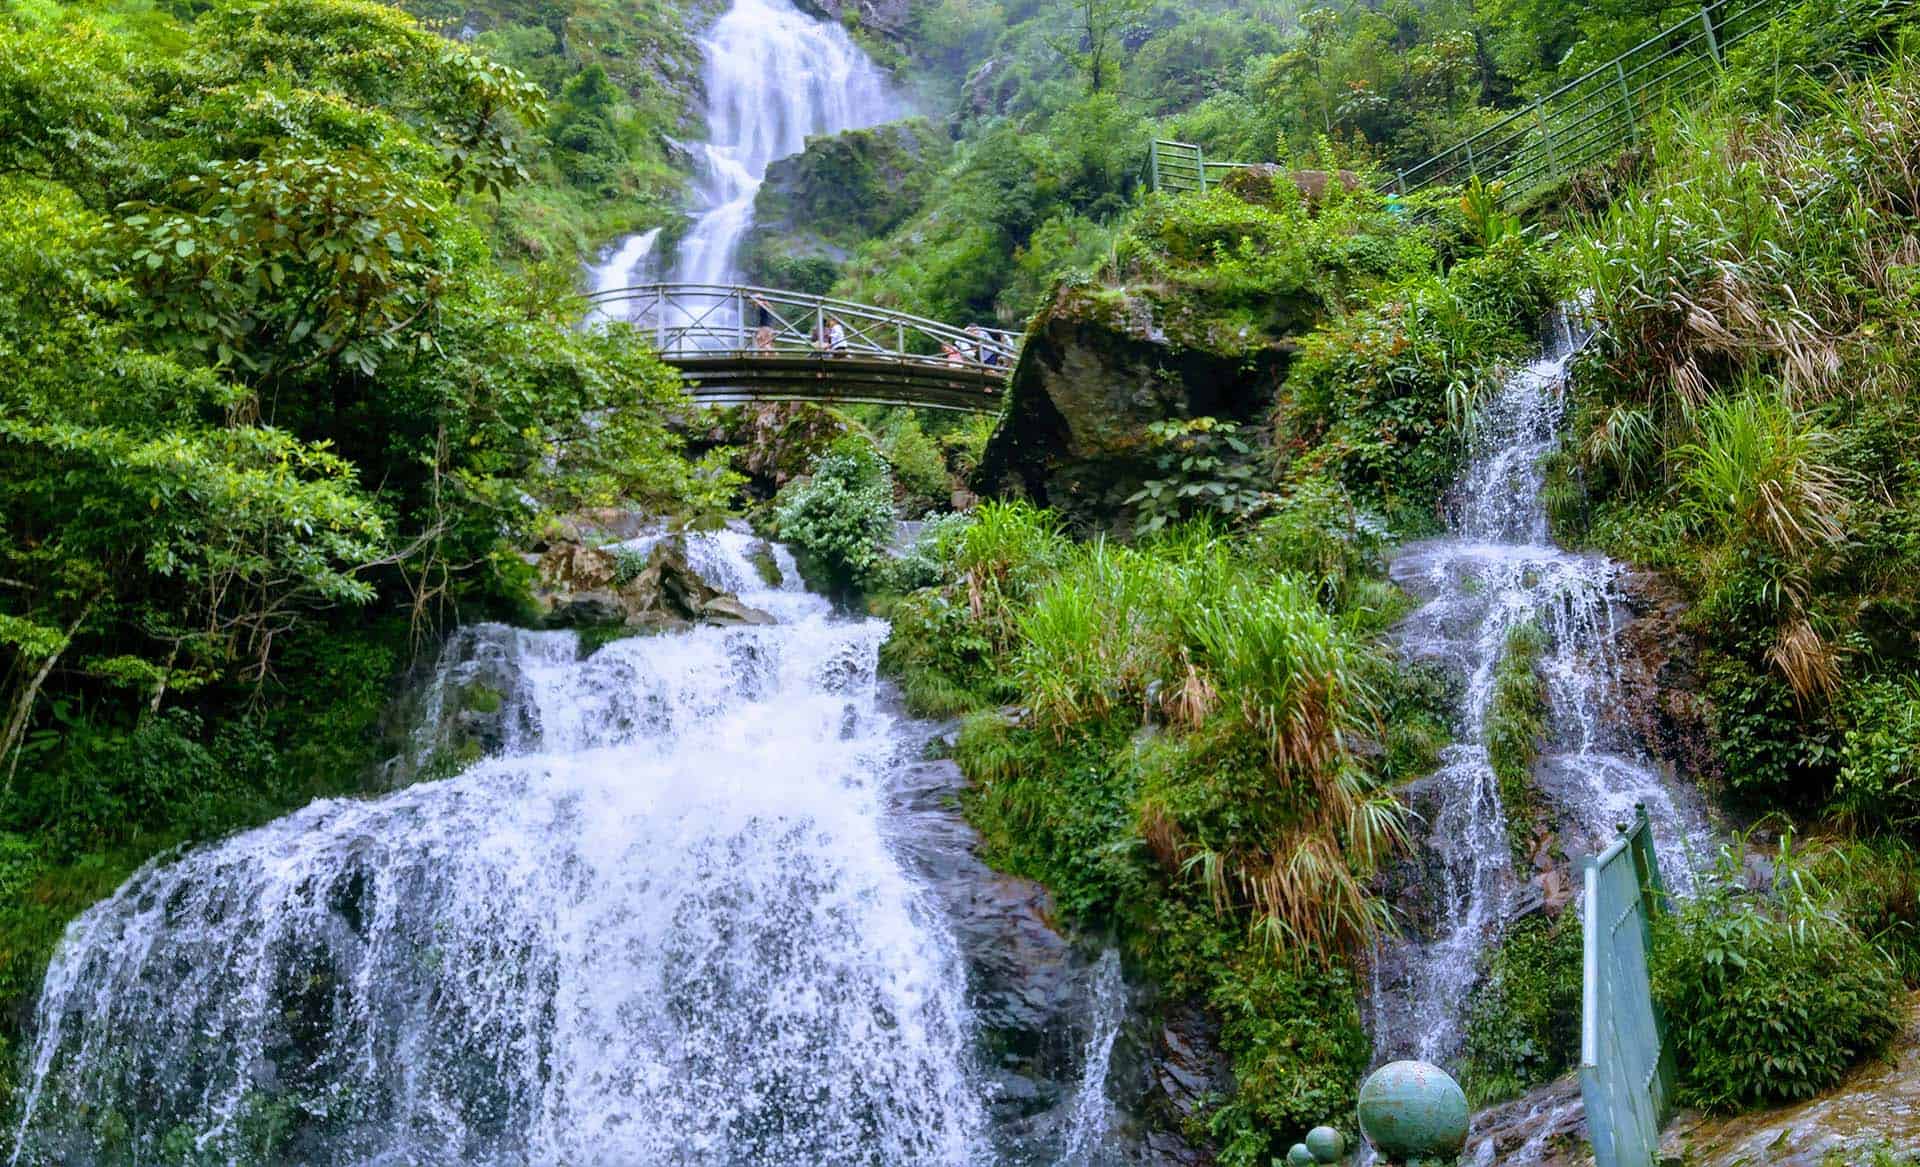 Silver Waterfall in Sapa